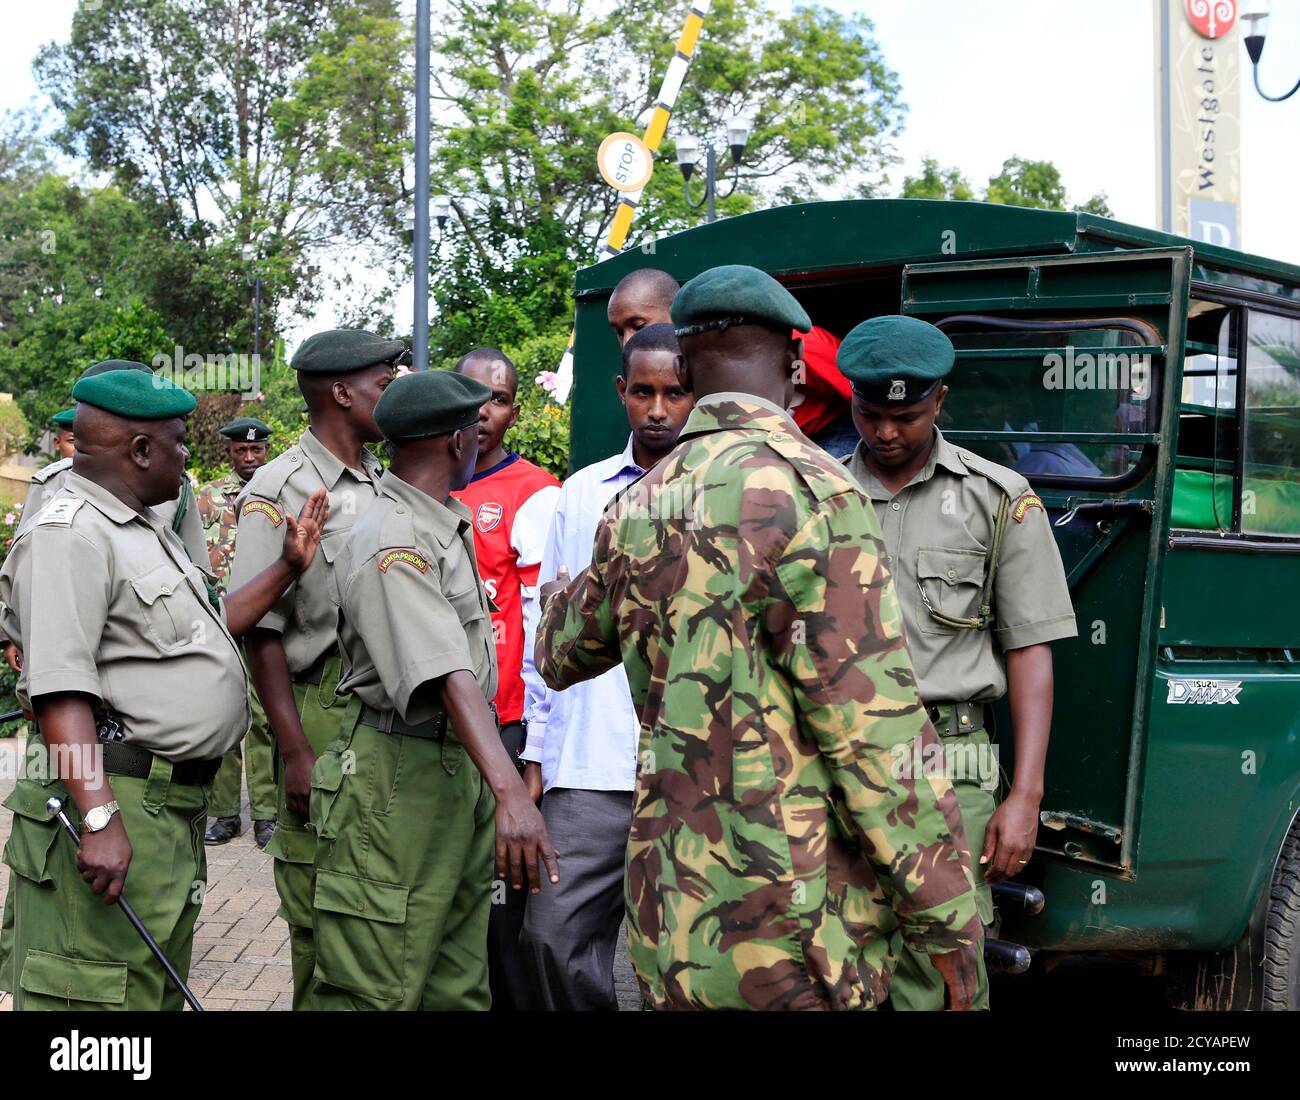 Les quatre hommes accusés d'avoir aidé des militants liés à Al-Qaïda à lancer une attaque sur le centre commercial Westgate, arrivent sous garde des gardiens de prison lors d'une session du tribunal à Nairobi le 21 janvier 2014. Le procès des quatre hommes somaliens, accusés de soutenir et d'abriter des hommes armés qui ont tué au moins 67 personnes lors de l'assaut sur le complexe Westgate de Nairobi qui a commencé le 21 septembre 2013, a commencé la semaine dernière. L'assaut a été revendiqué par le groupe rebelle islamiste somalien Al Shabaab. REUTERS/Noor Khamis (KENYA - Tags: DROIT DE LA CRIMINALITÉ DANS LES TROUBLES CIVILS) Banque D'Images